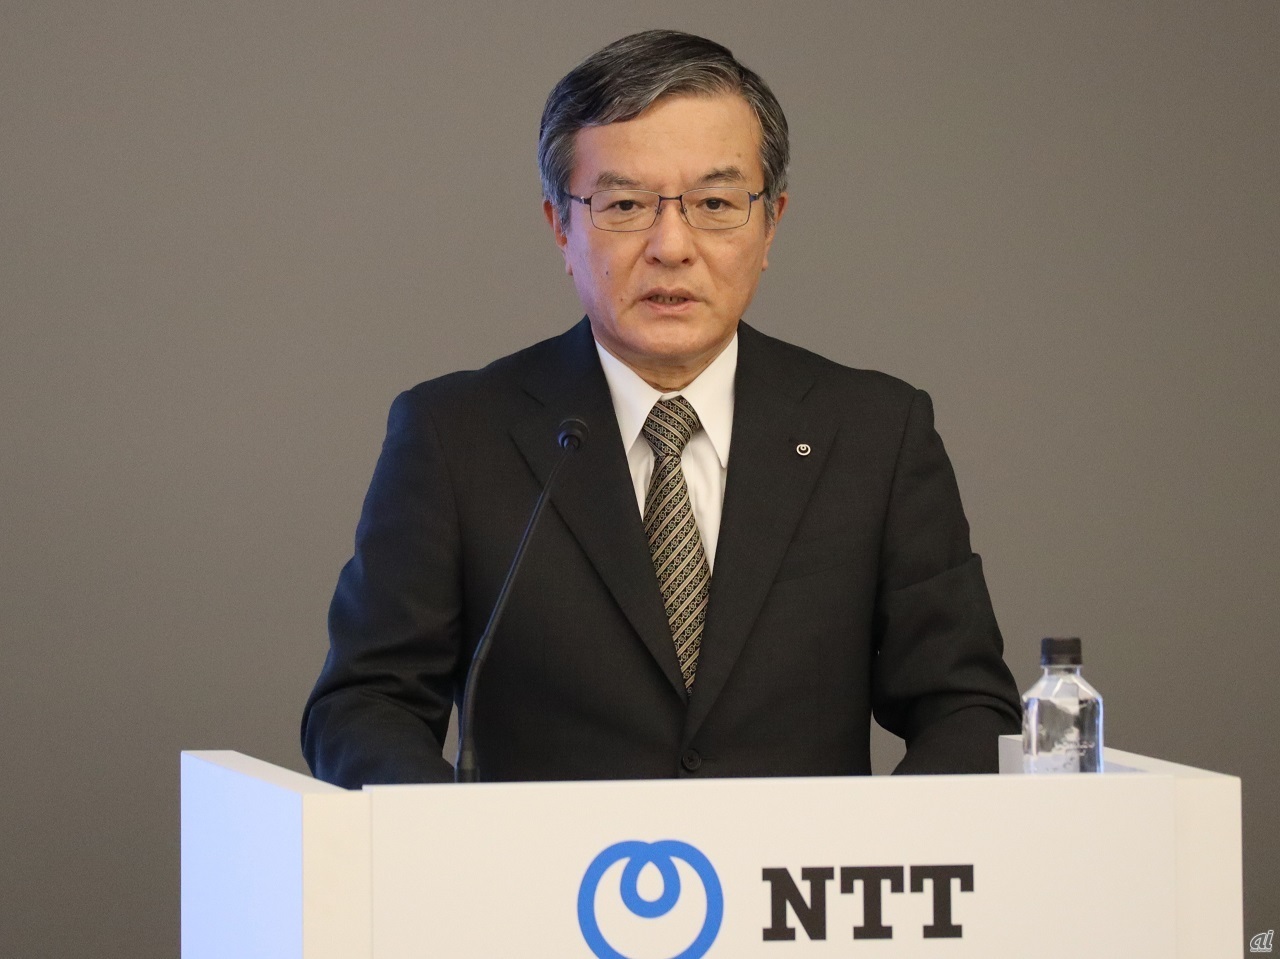 NTT 代表取締役社長 島田明氏